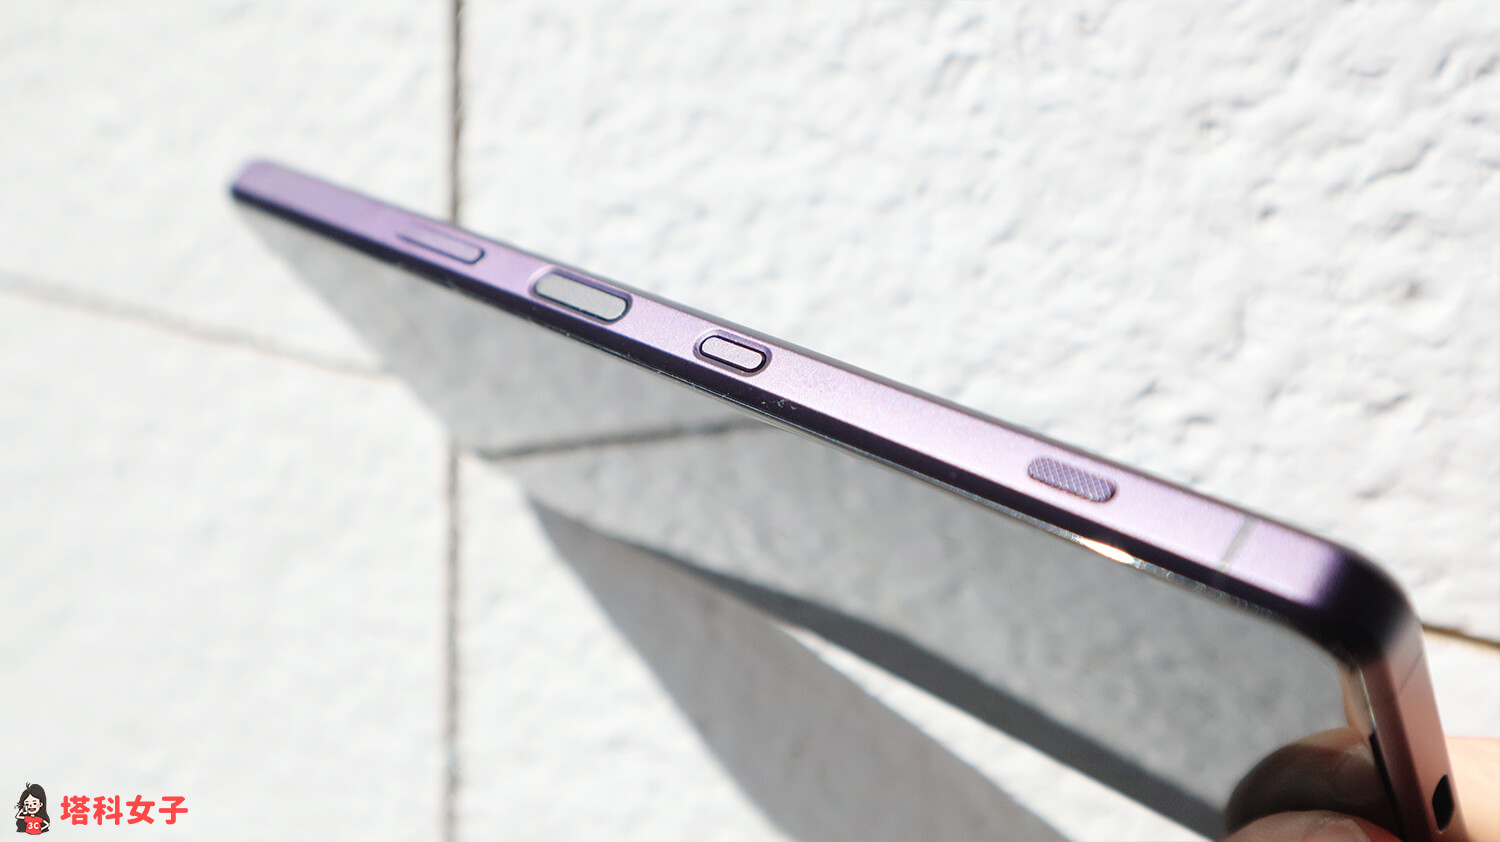 Sony Xperia 1 iii：霧面紫 側邊實體按鍵